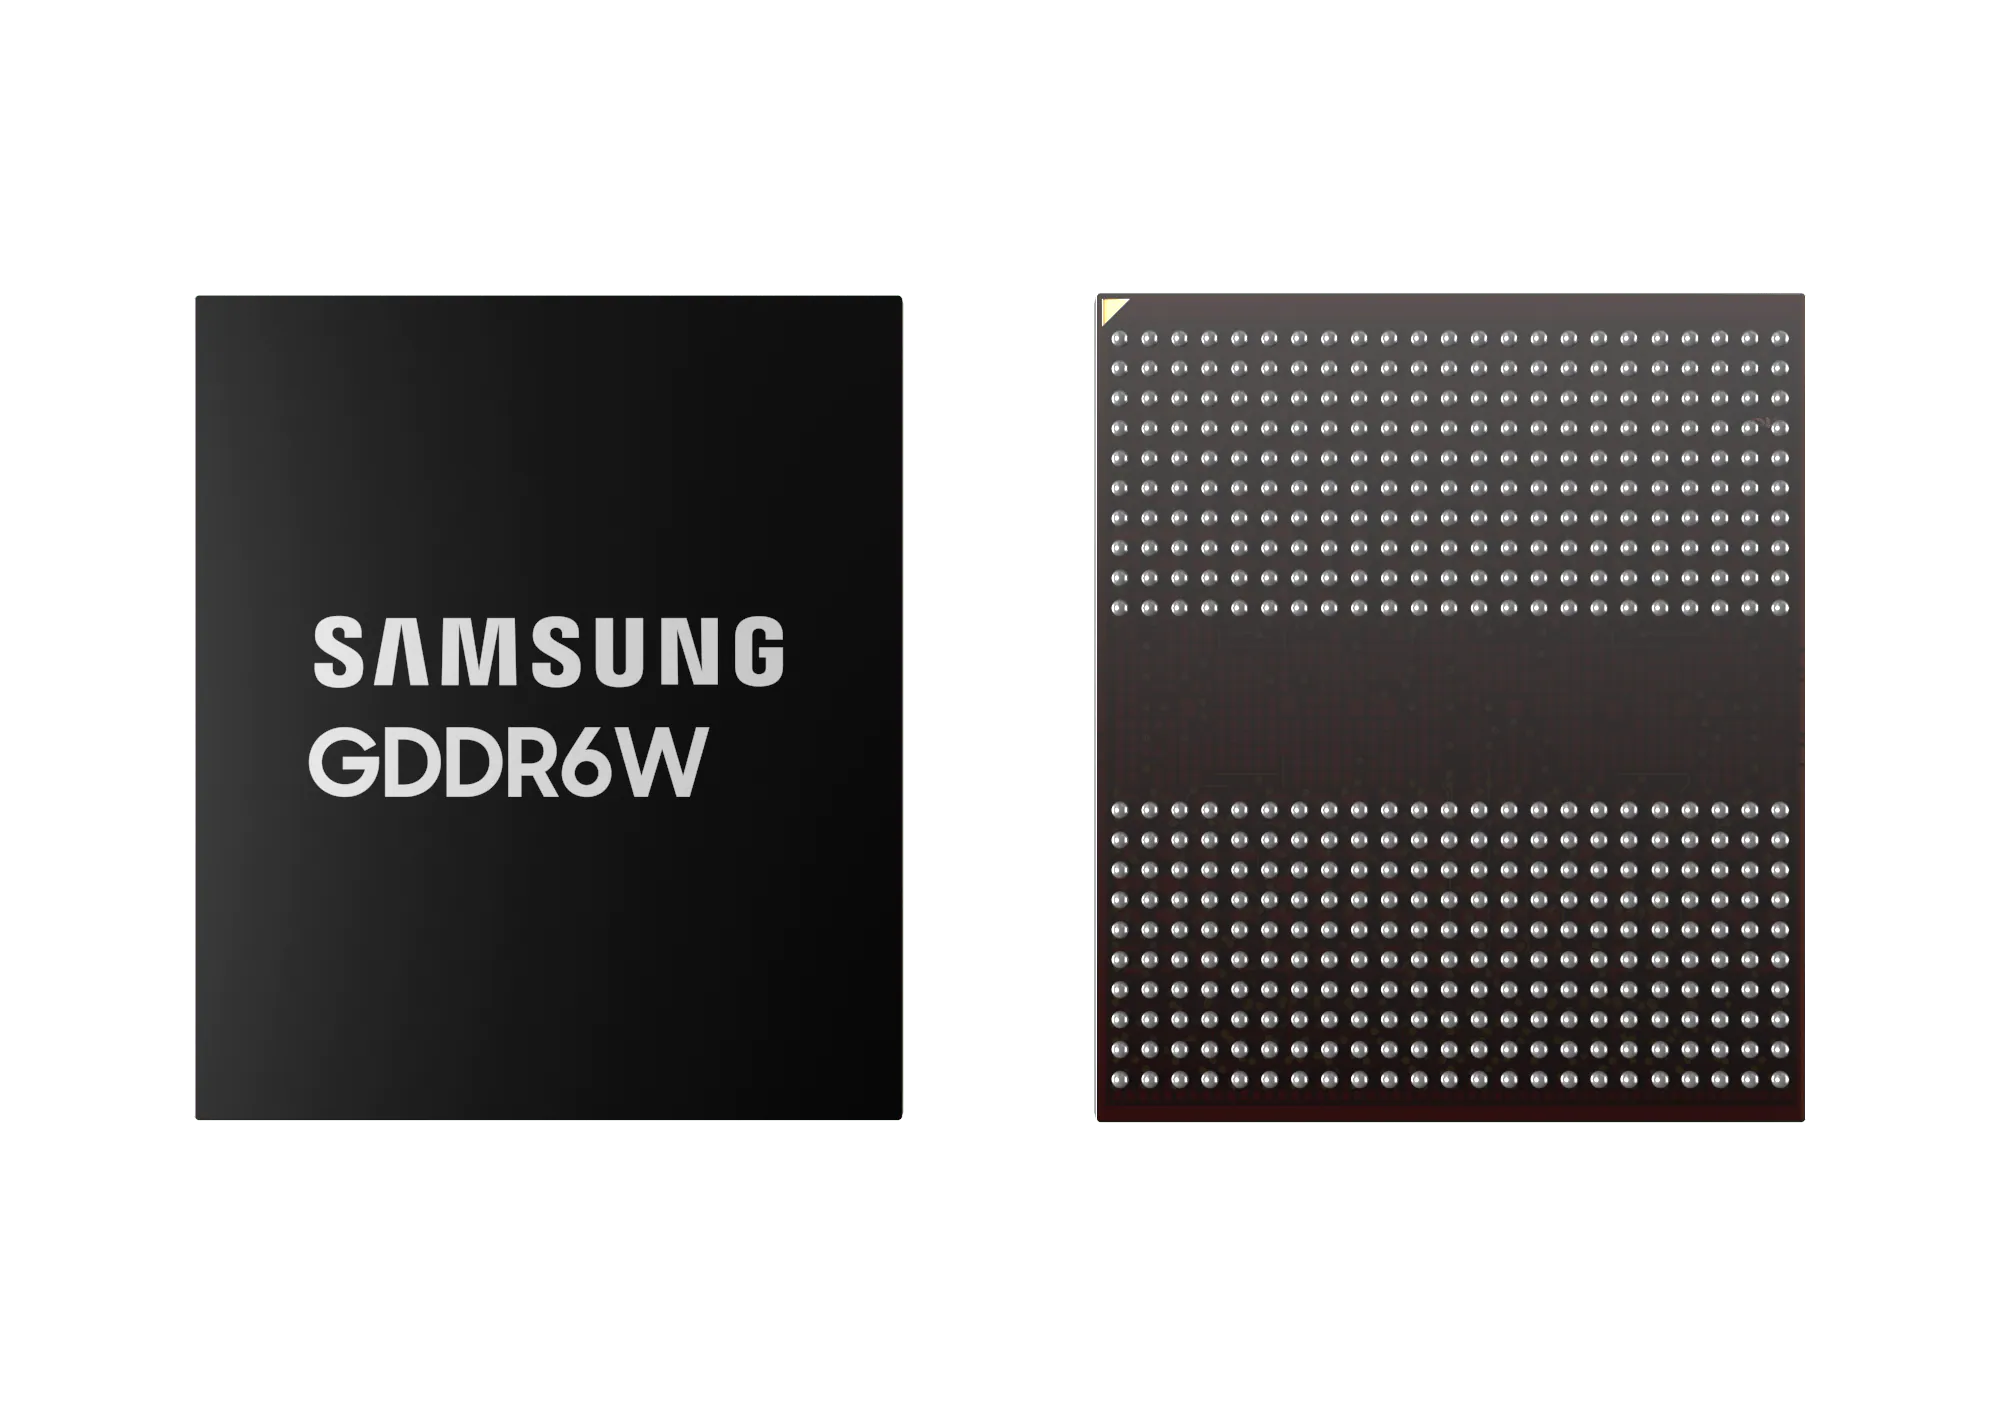 Media asset in full size related to 3dfxzone.it news item entitled as follows: Samsung annuncia la memoria grafica GDDR6W, una evoluzione dell'attuale GDDR6 | Image Name: news33919_Samsung_GDDR6W_1.png